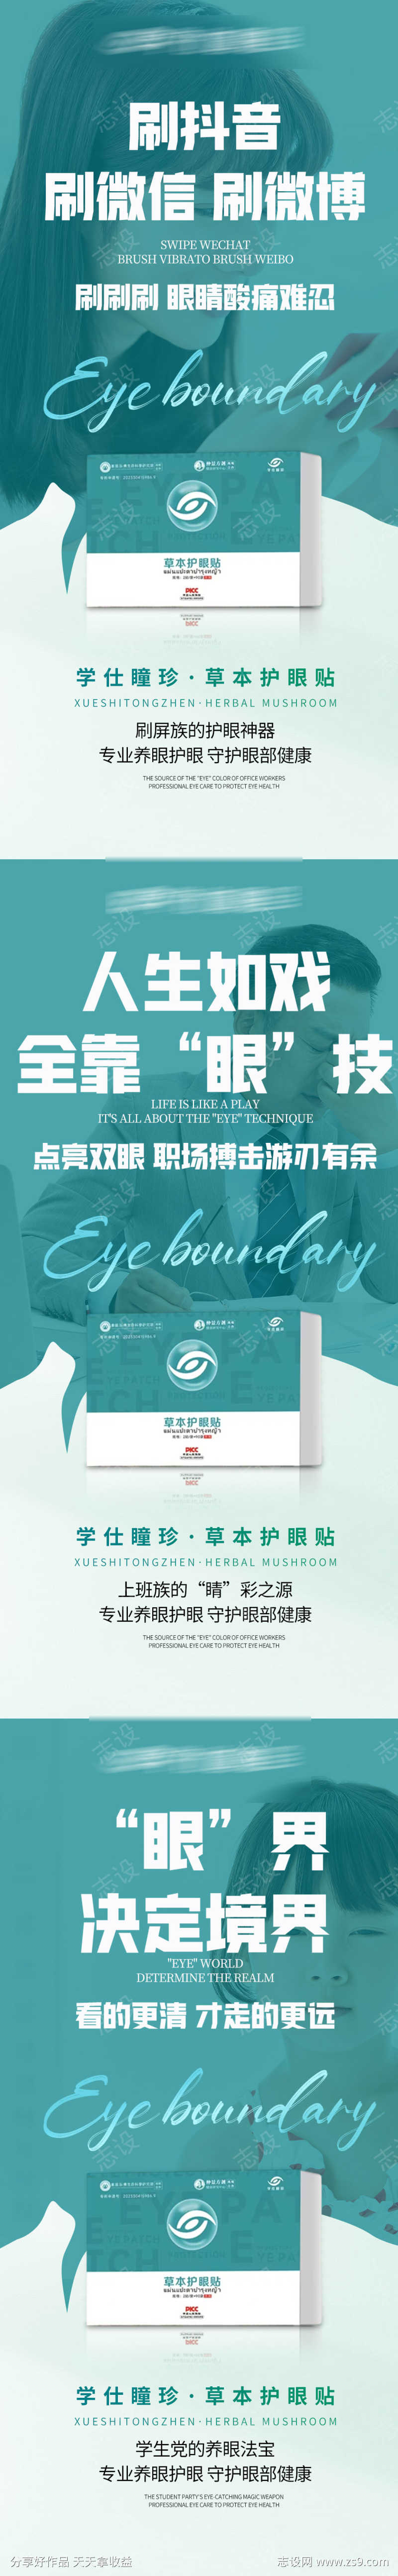 眼睛视力产品宣传微商海报